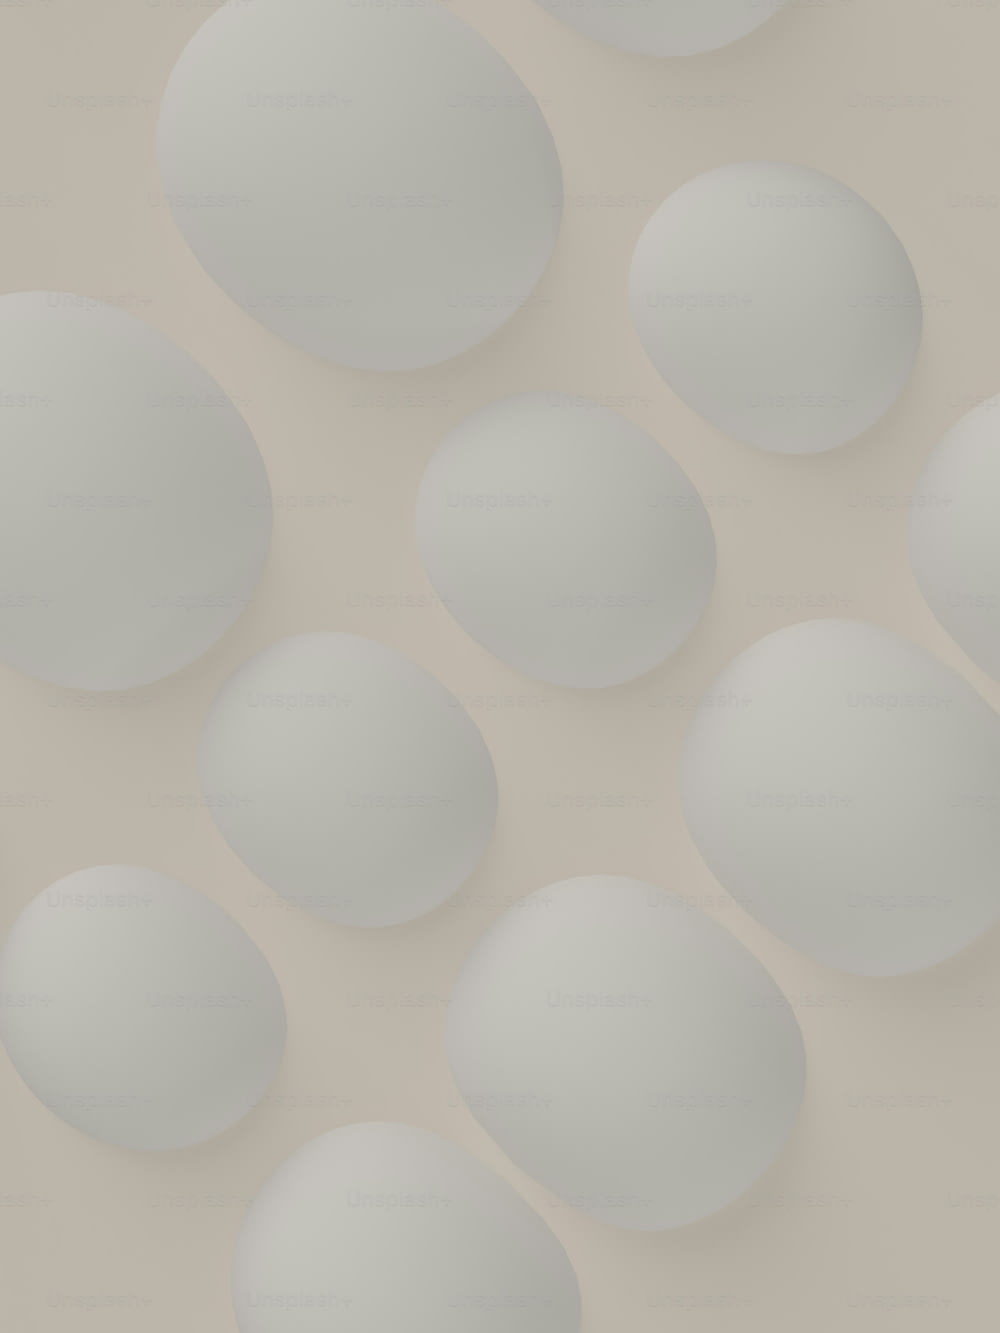 un bouquet d’œufs blancs assis sur une table